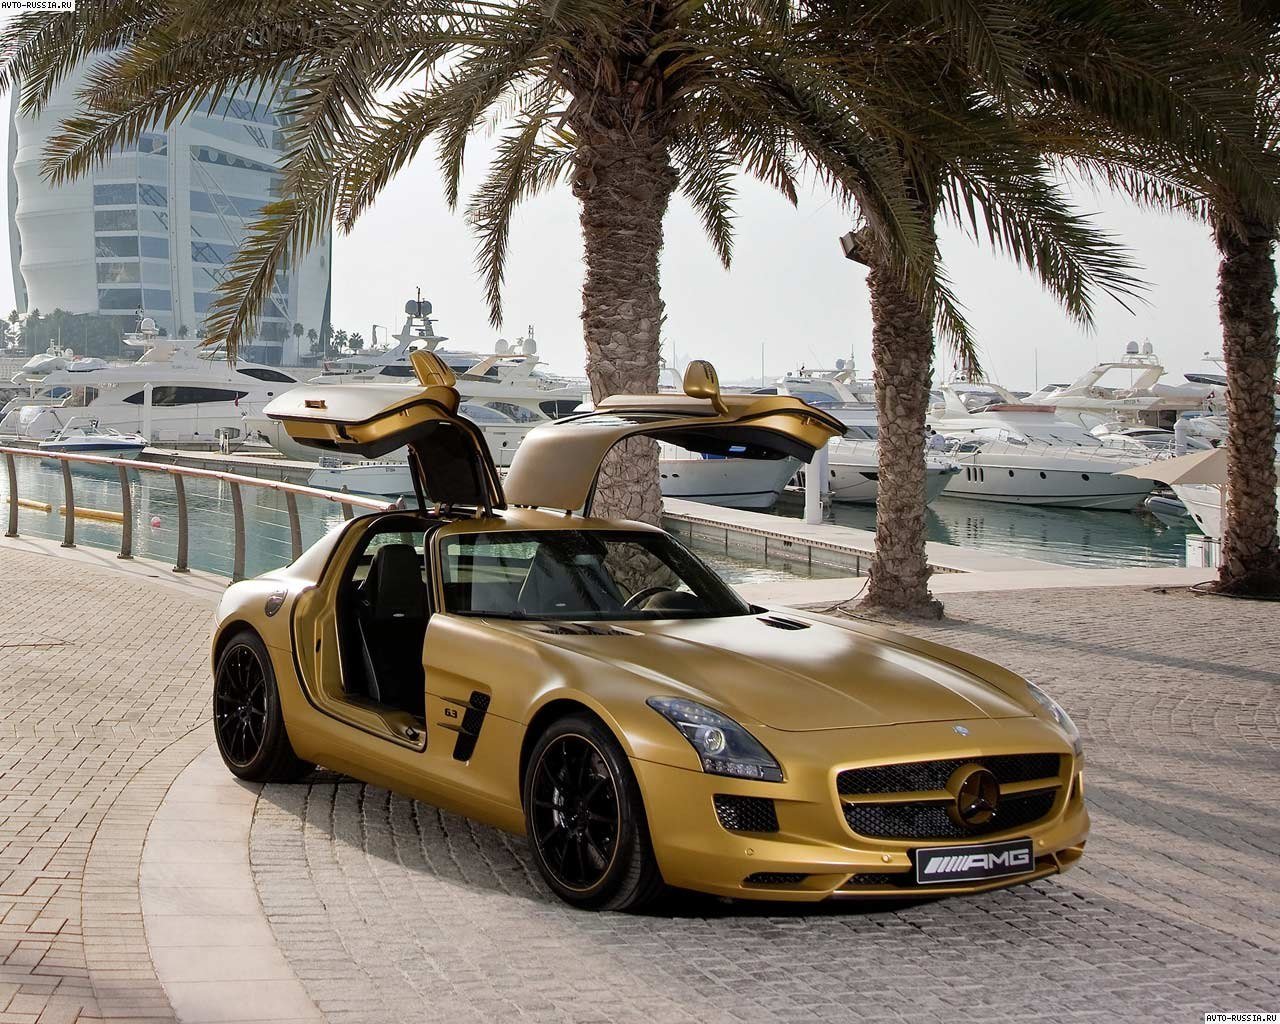 New Car Prices In Dubai - New Cars For Sale In Dubai